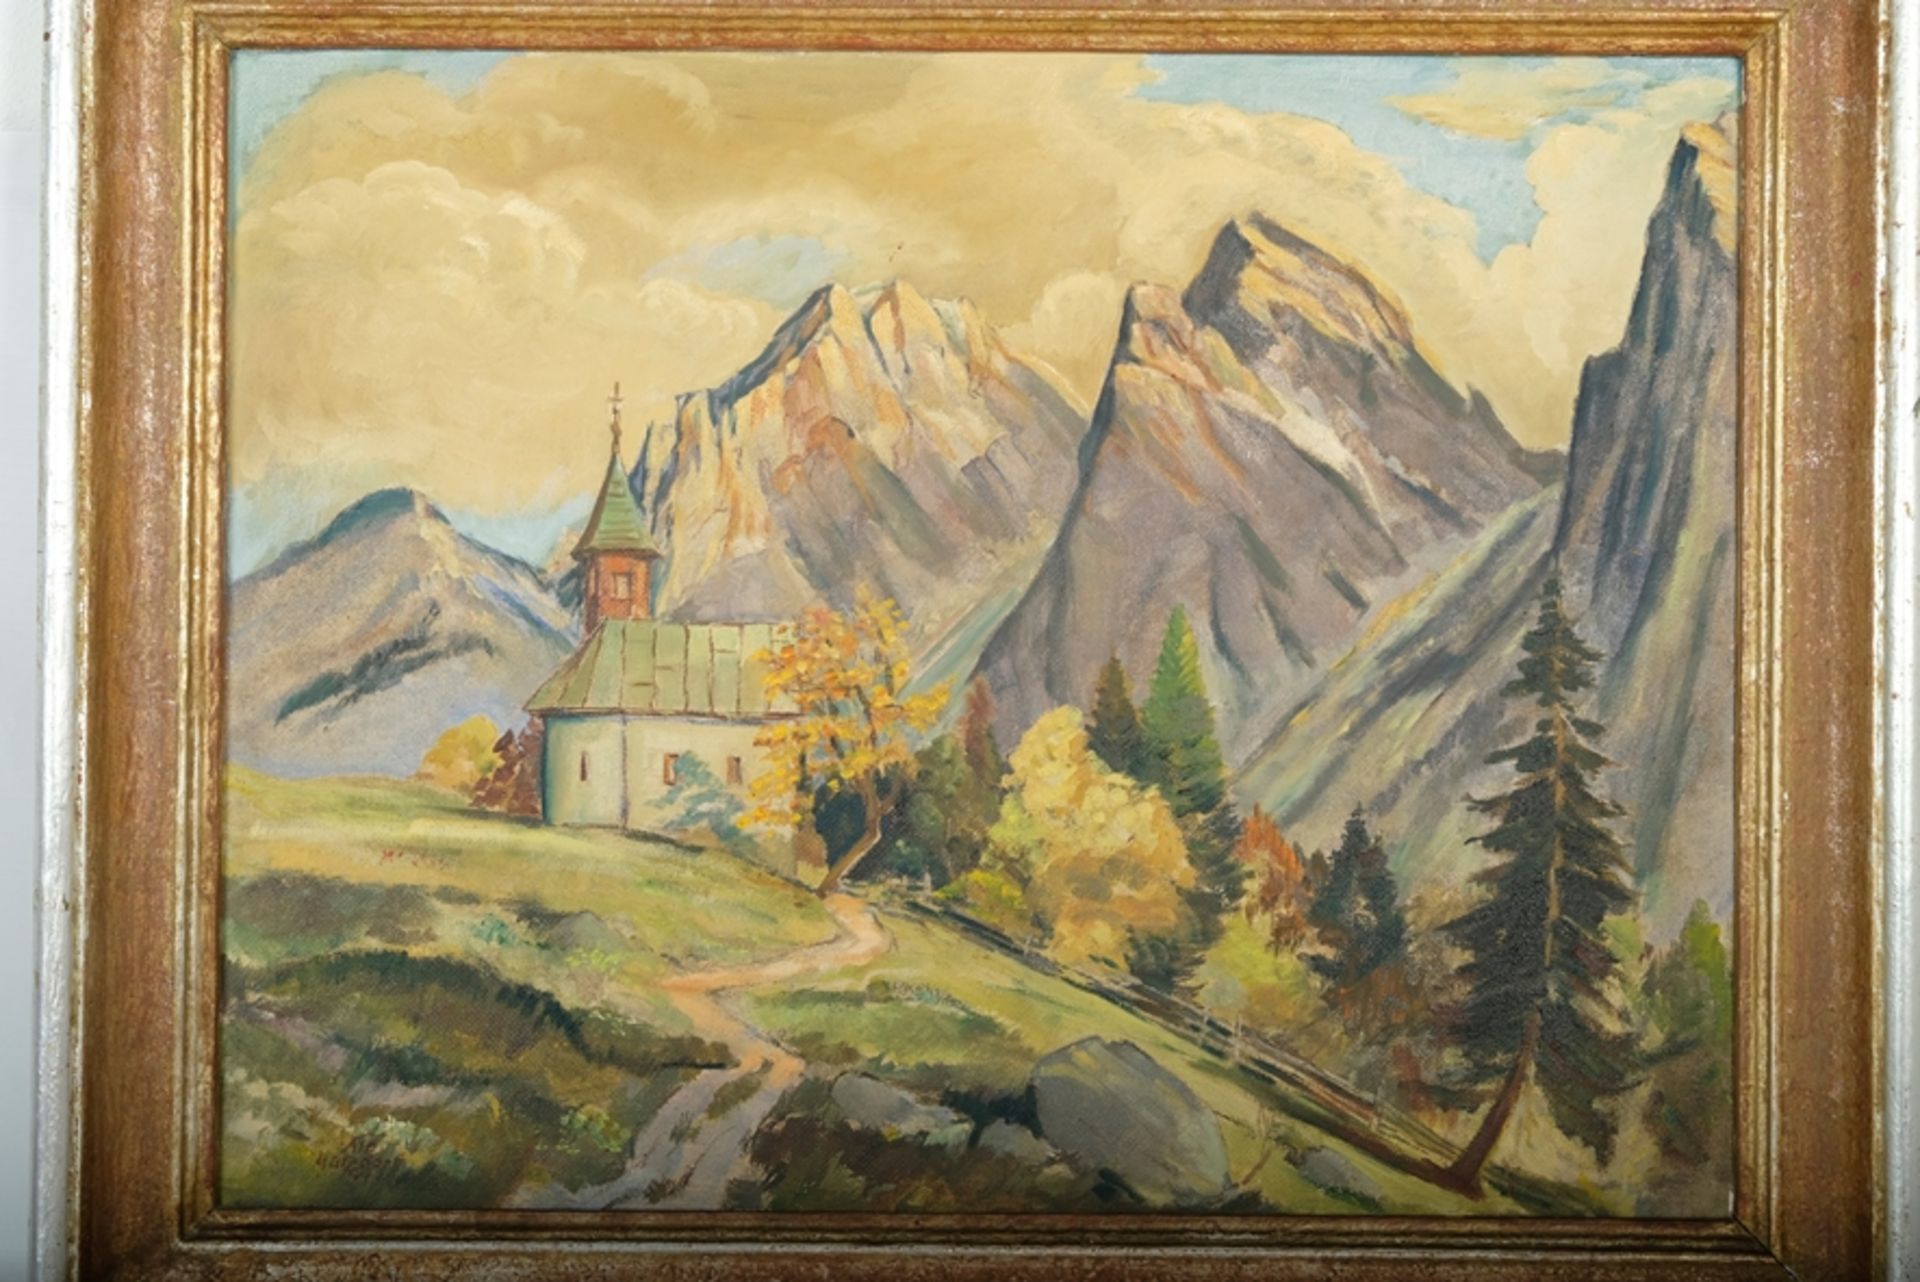 Matzdorf, Albert (1912-1992) Wanderung zu einer Kapelle in den Bergen, oil painting/pastel on canva